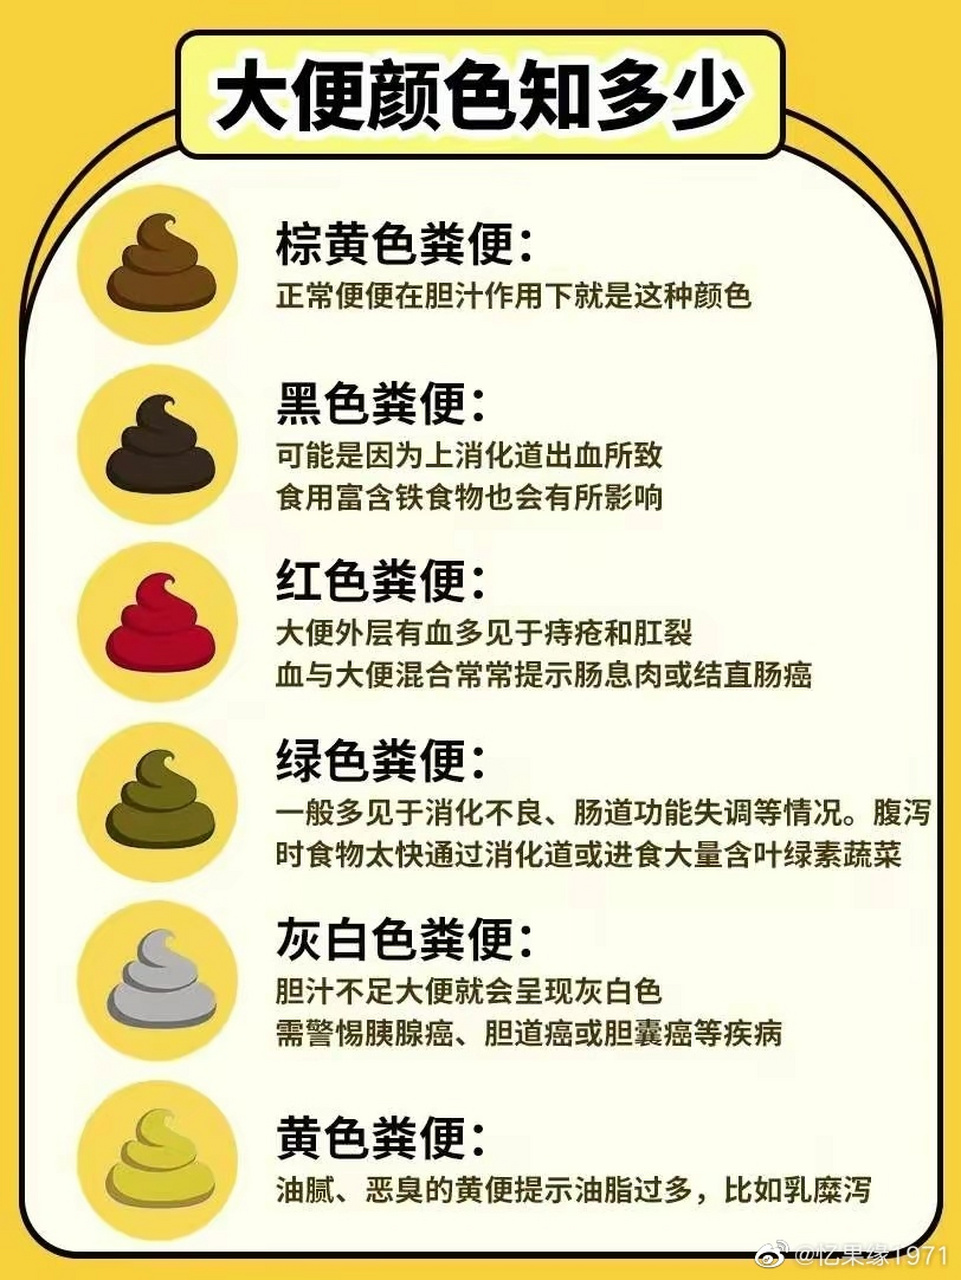 棕黄色粪便: 这是正常大便的颜色,是因肝脏分泌的胆汁进入人体的肝肠